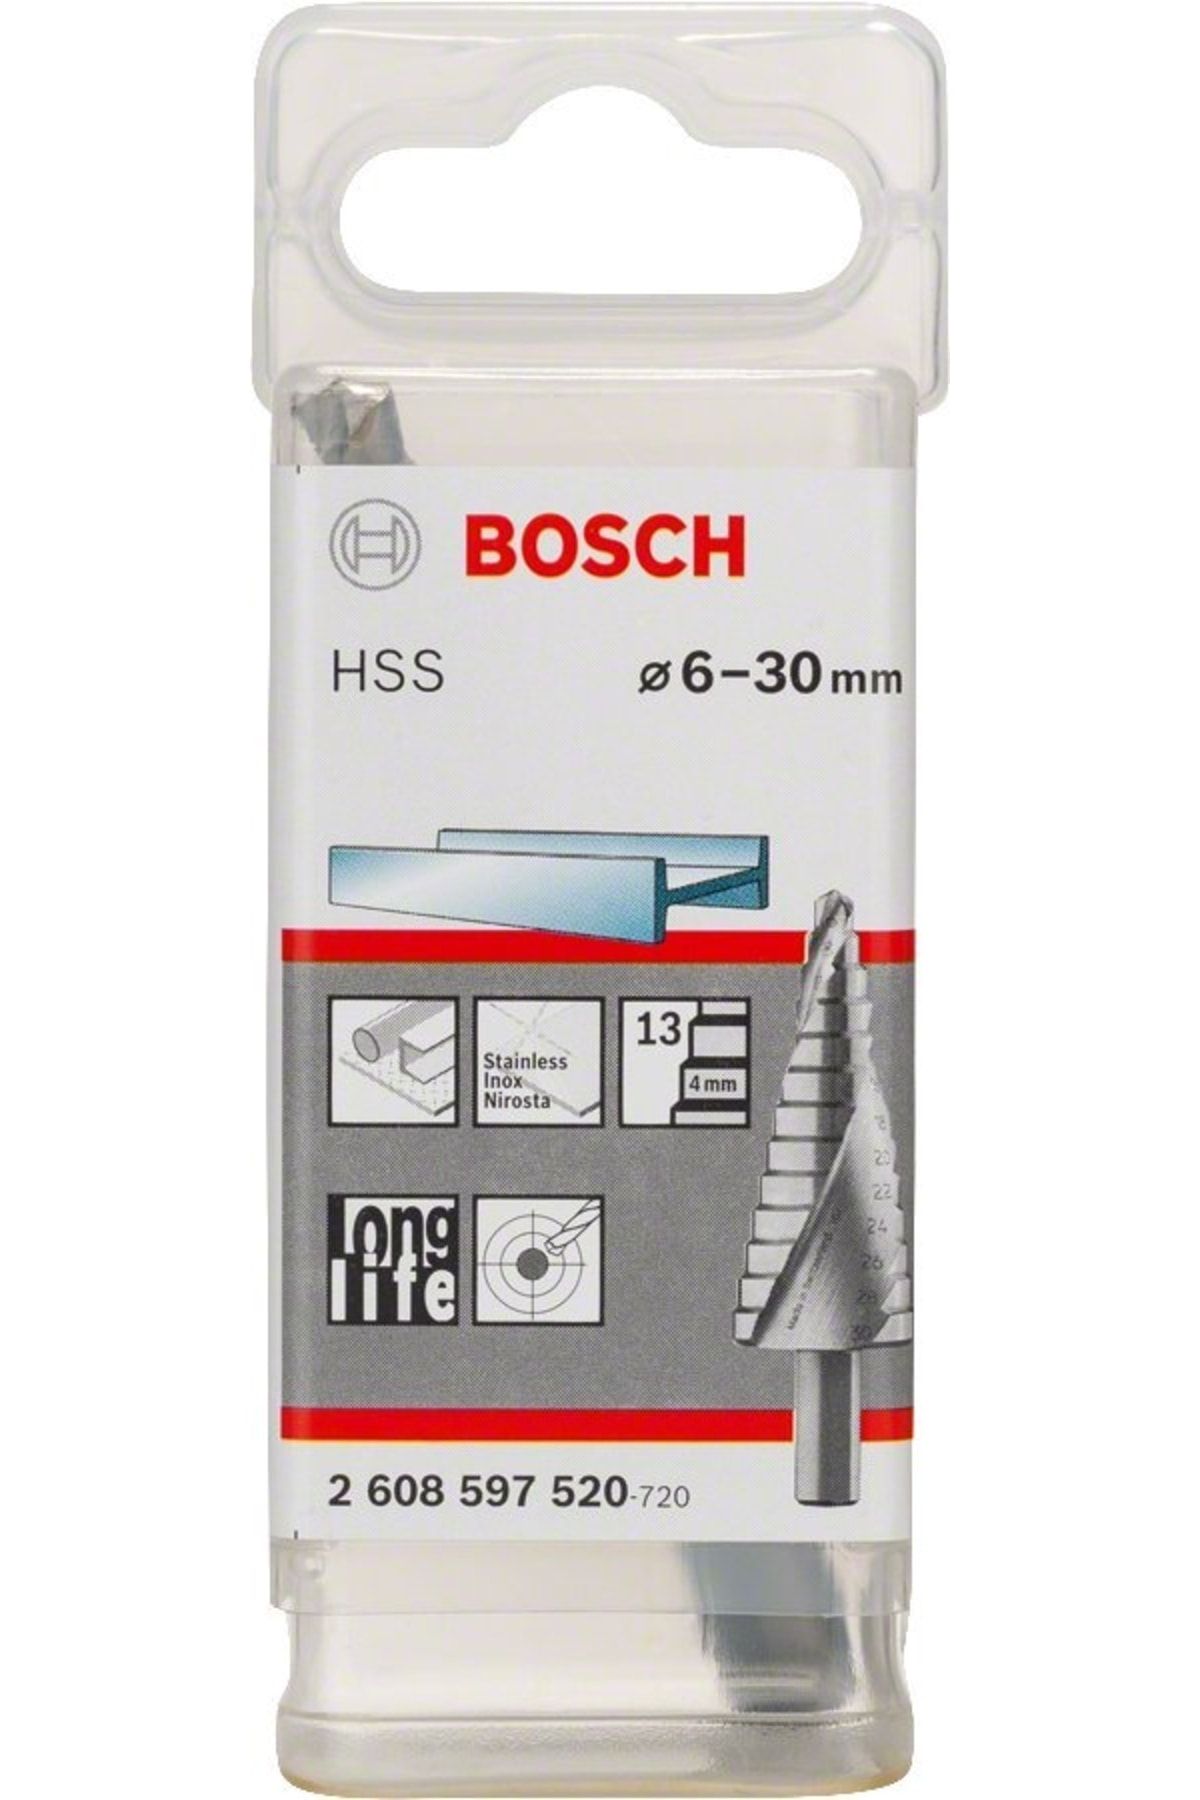 Bosch Hss 13 Kademeli Matkap Ucu 6-30 Mm - 2608597520